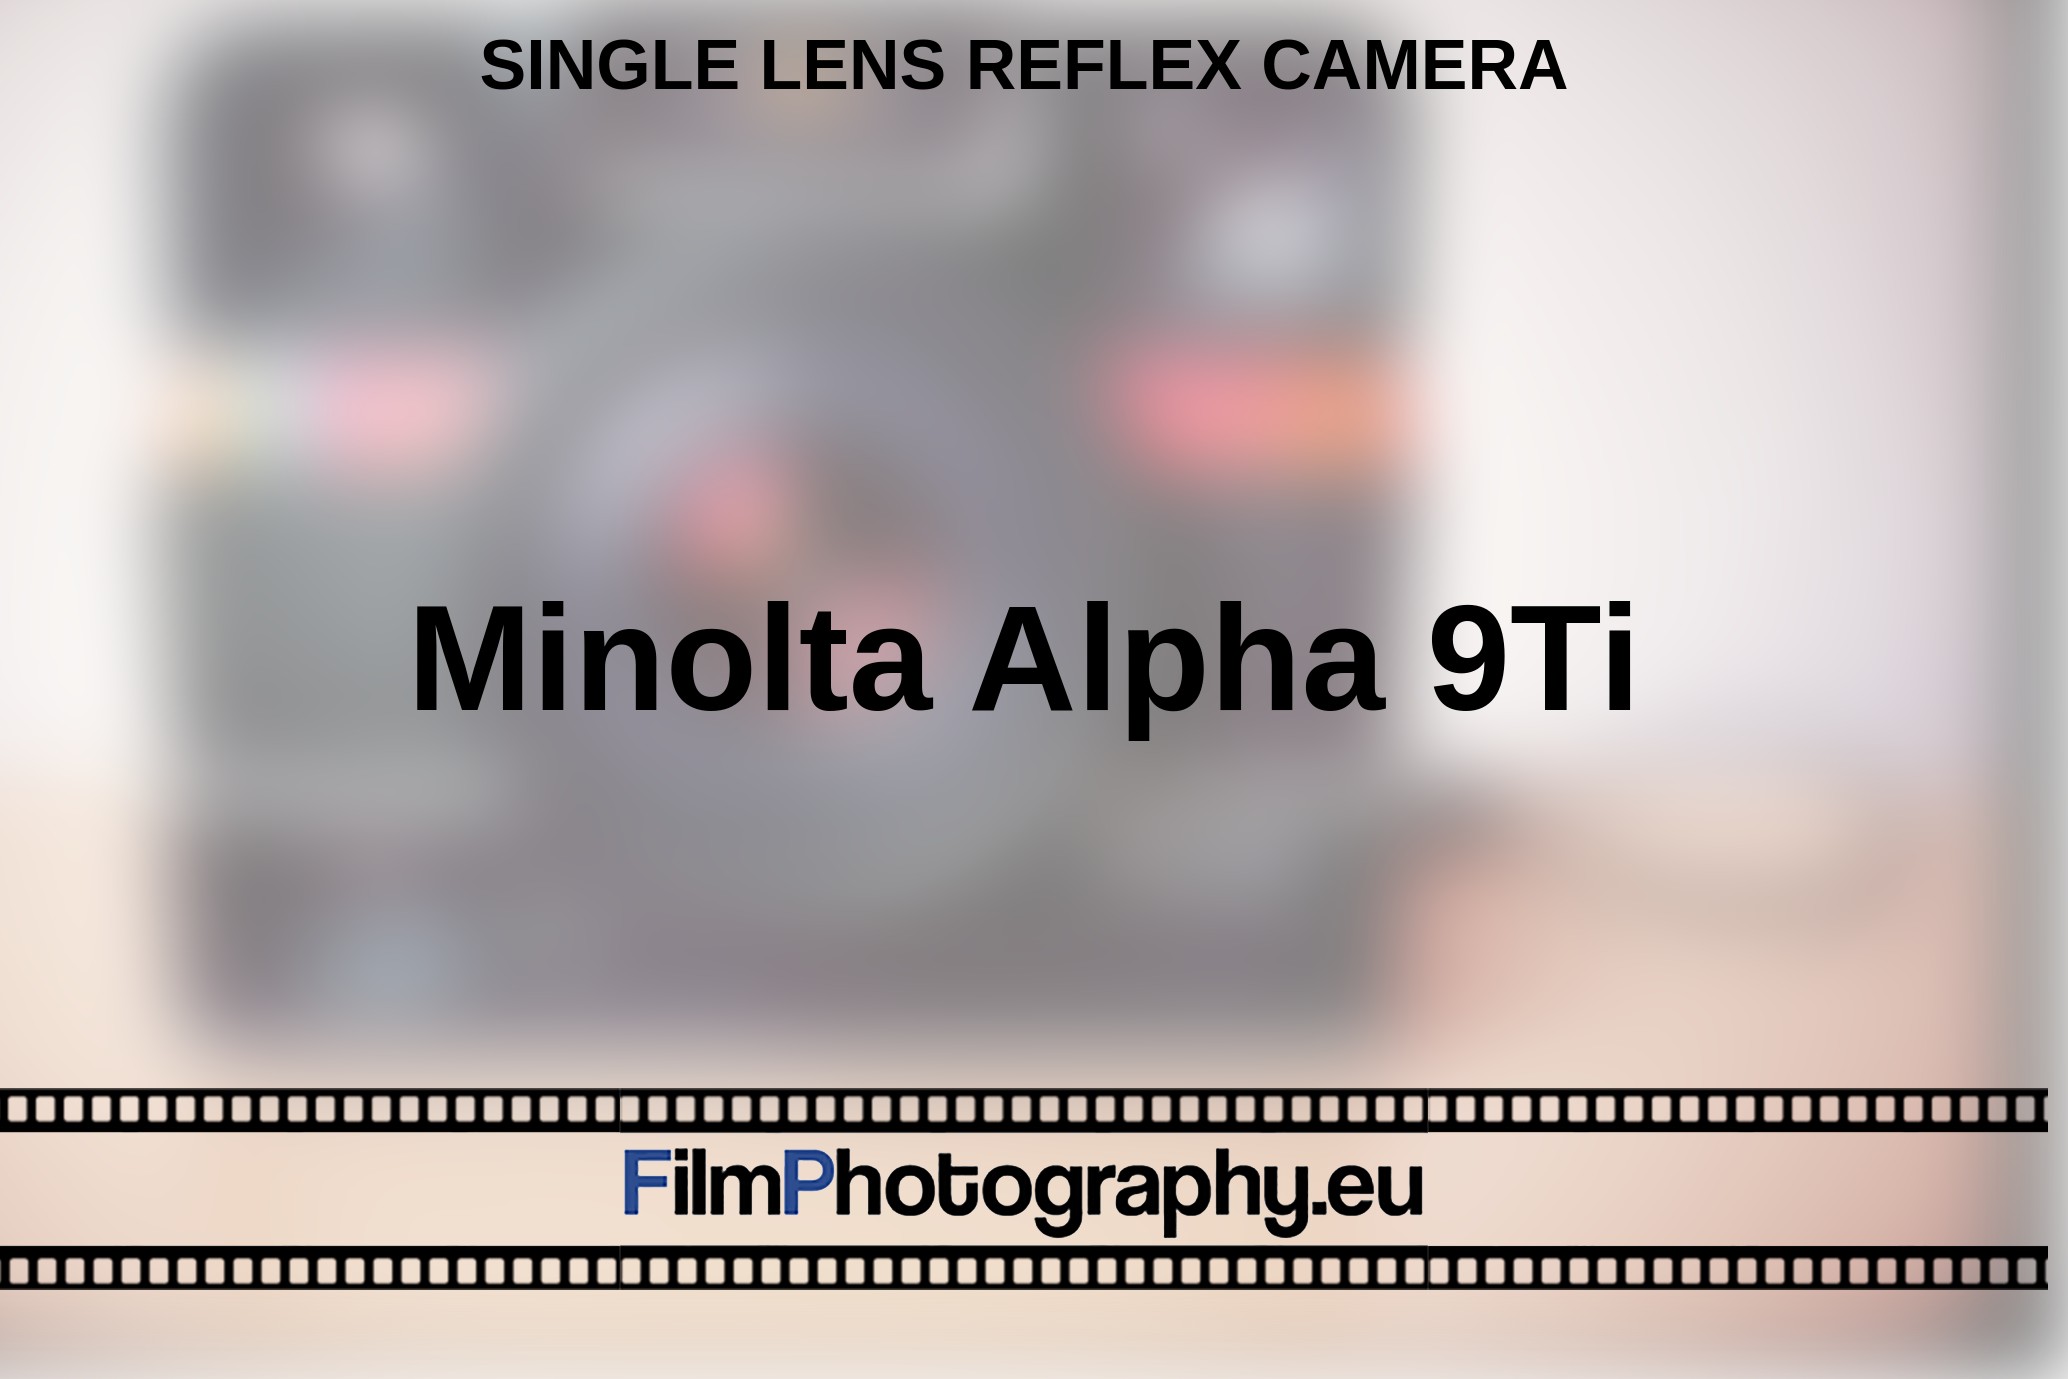 Minolta-Alpha-9Ti-single-lens-reflex-camera-bnv.jpg